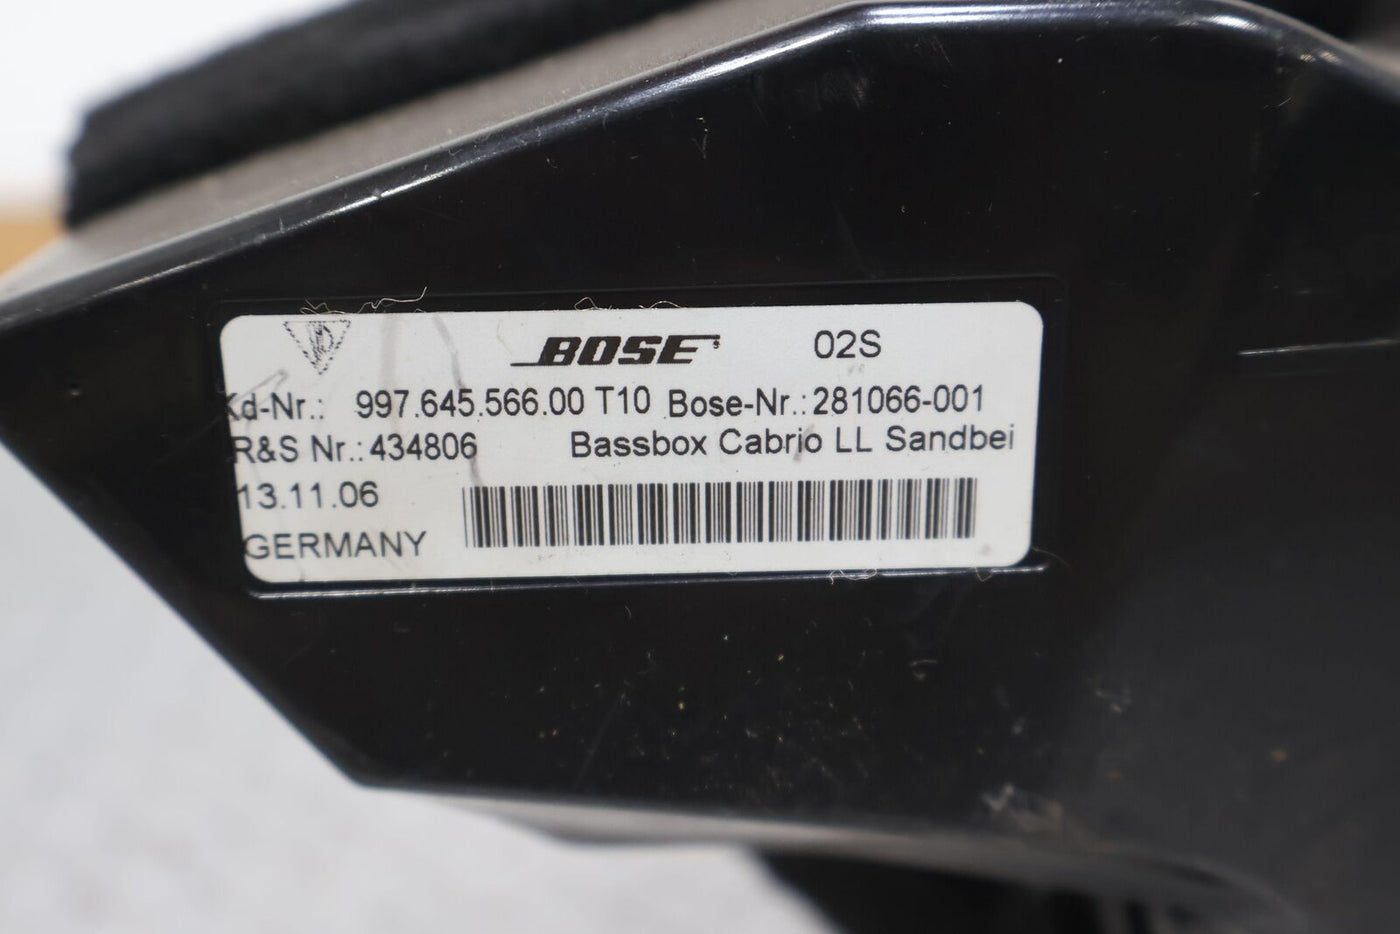 05-09 Porsche 911 997 987 Convertible Bose Subwoofer W/ Enclosure (99764556600)